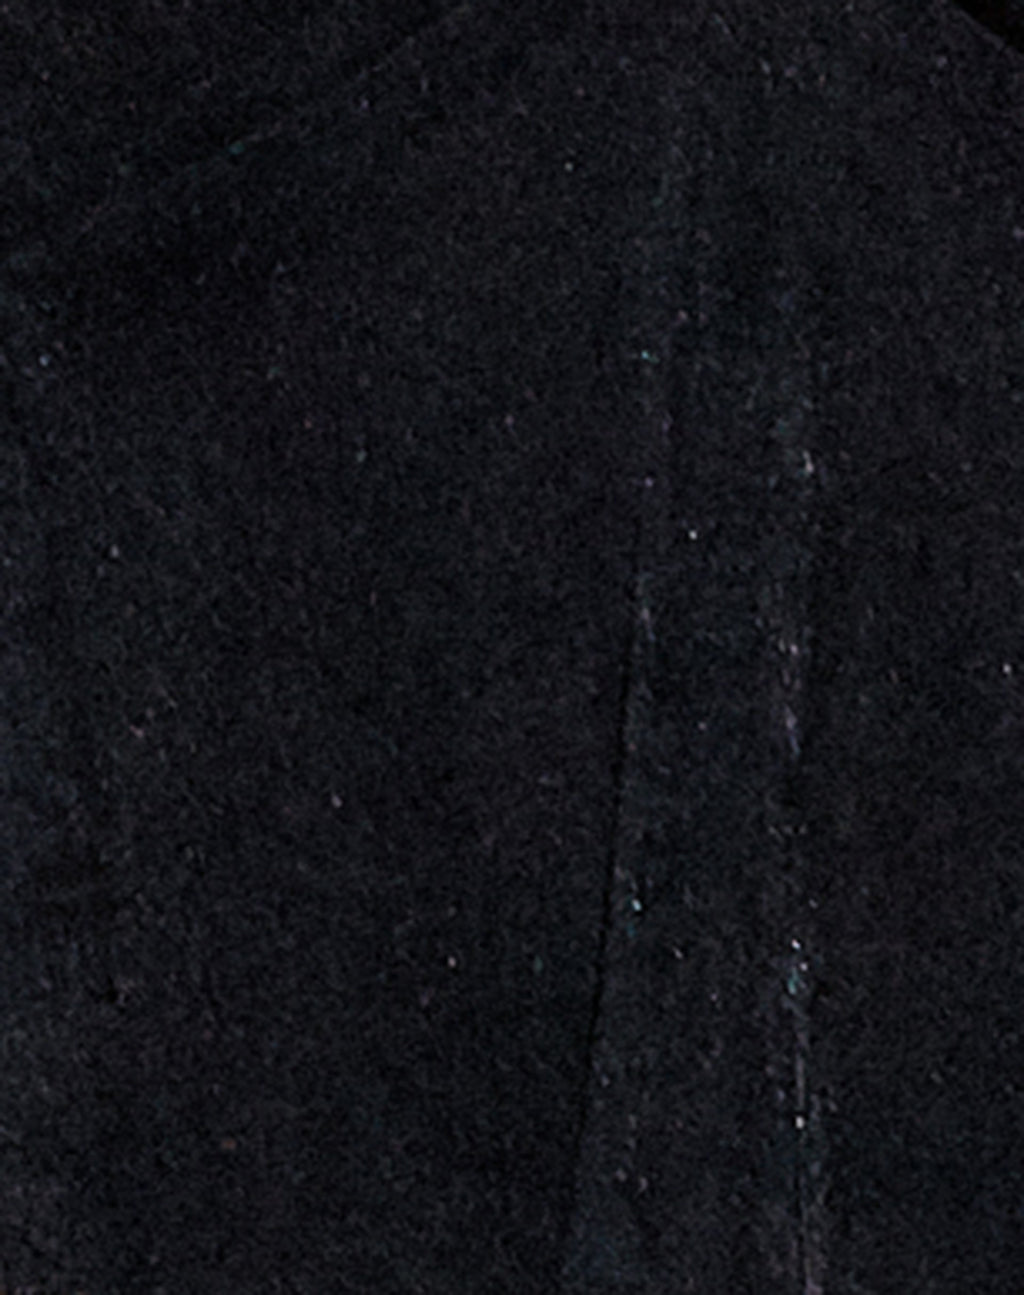 MOTEL X OLIVIA NEILL Hanabi Top en crepé negro